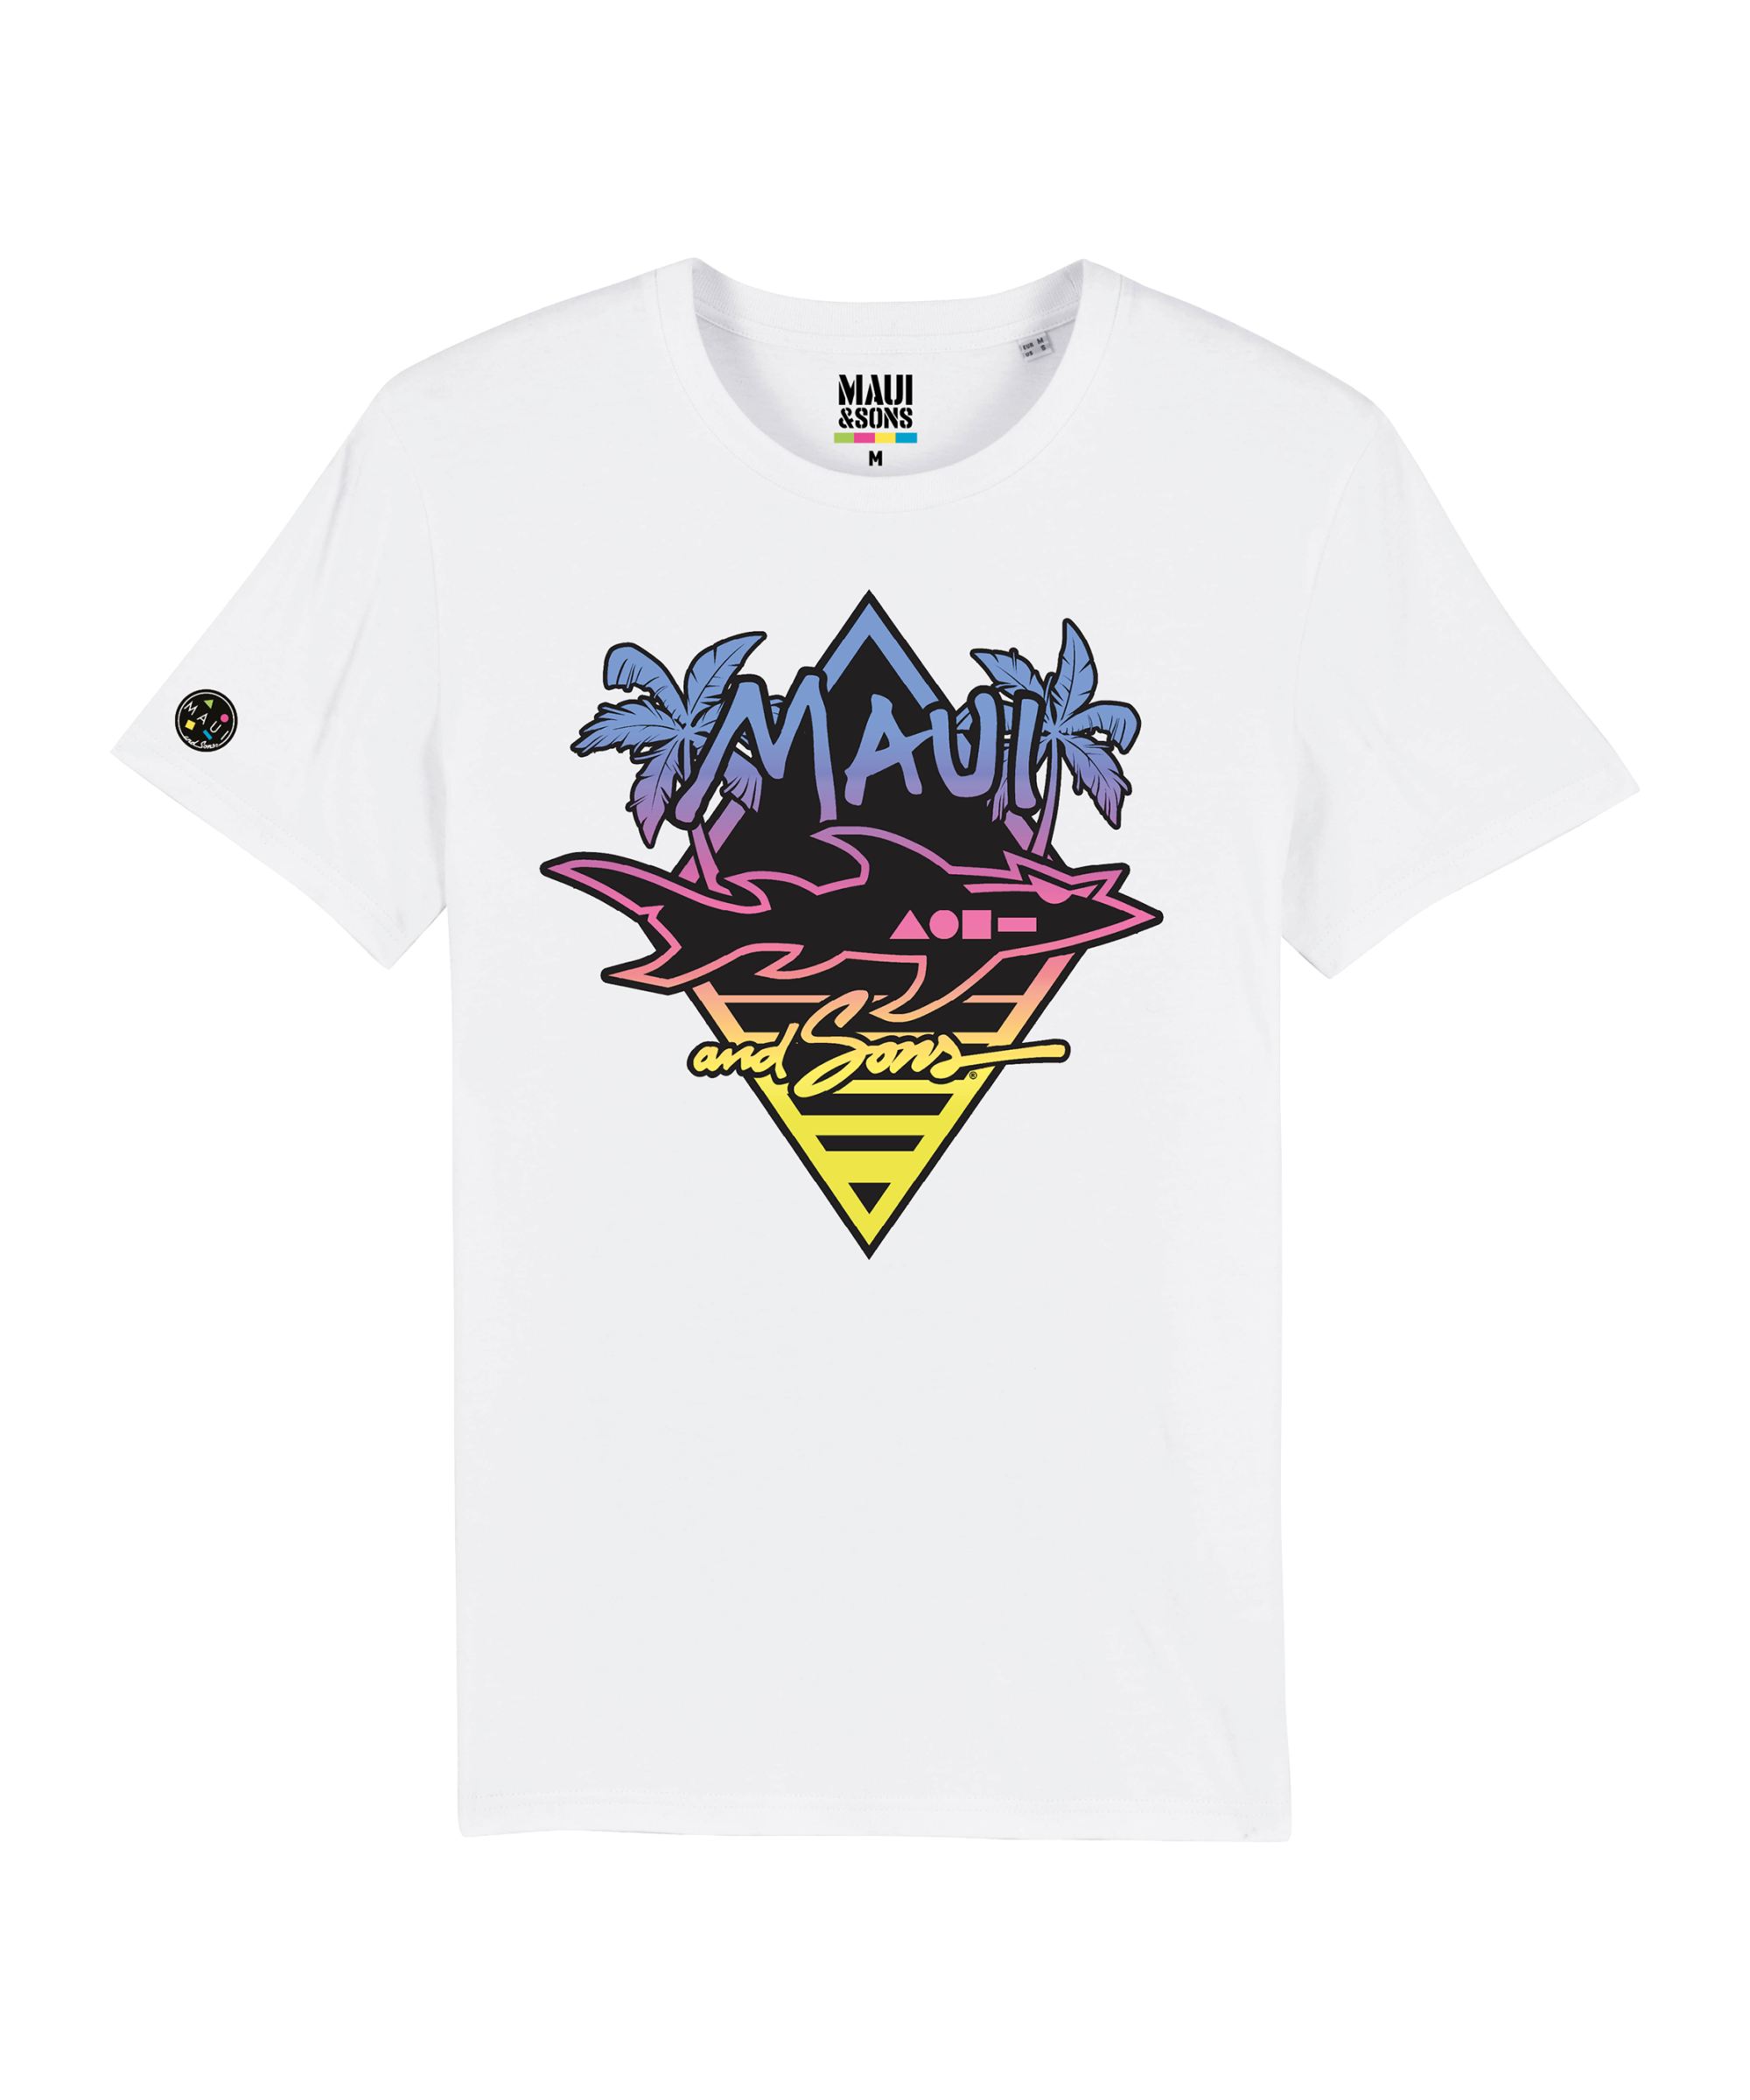 MAUI Sons "Sunrise" T-Shirt - White